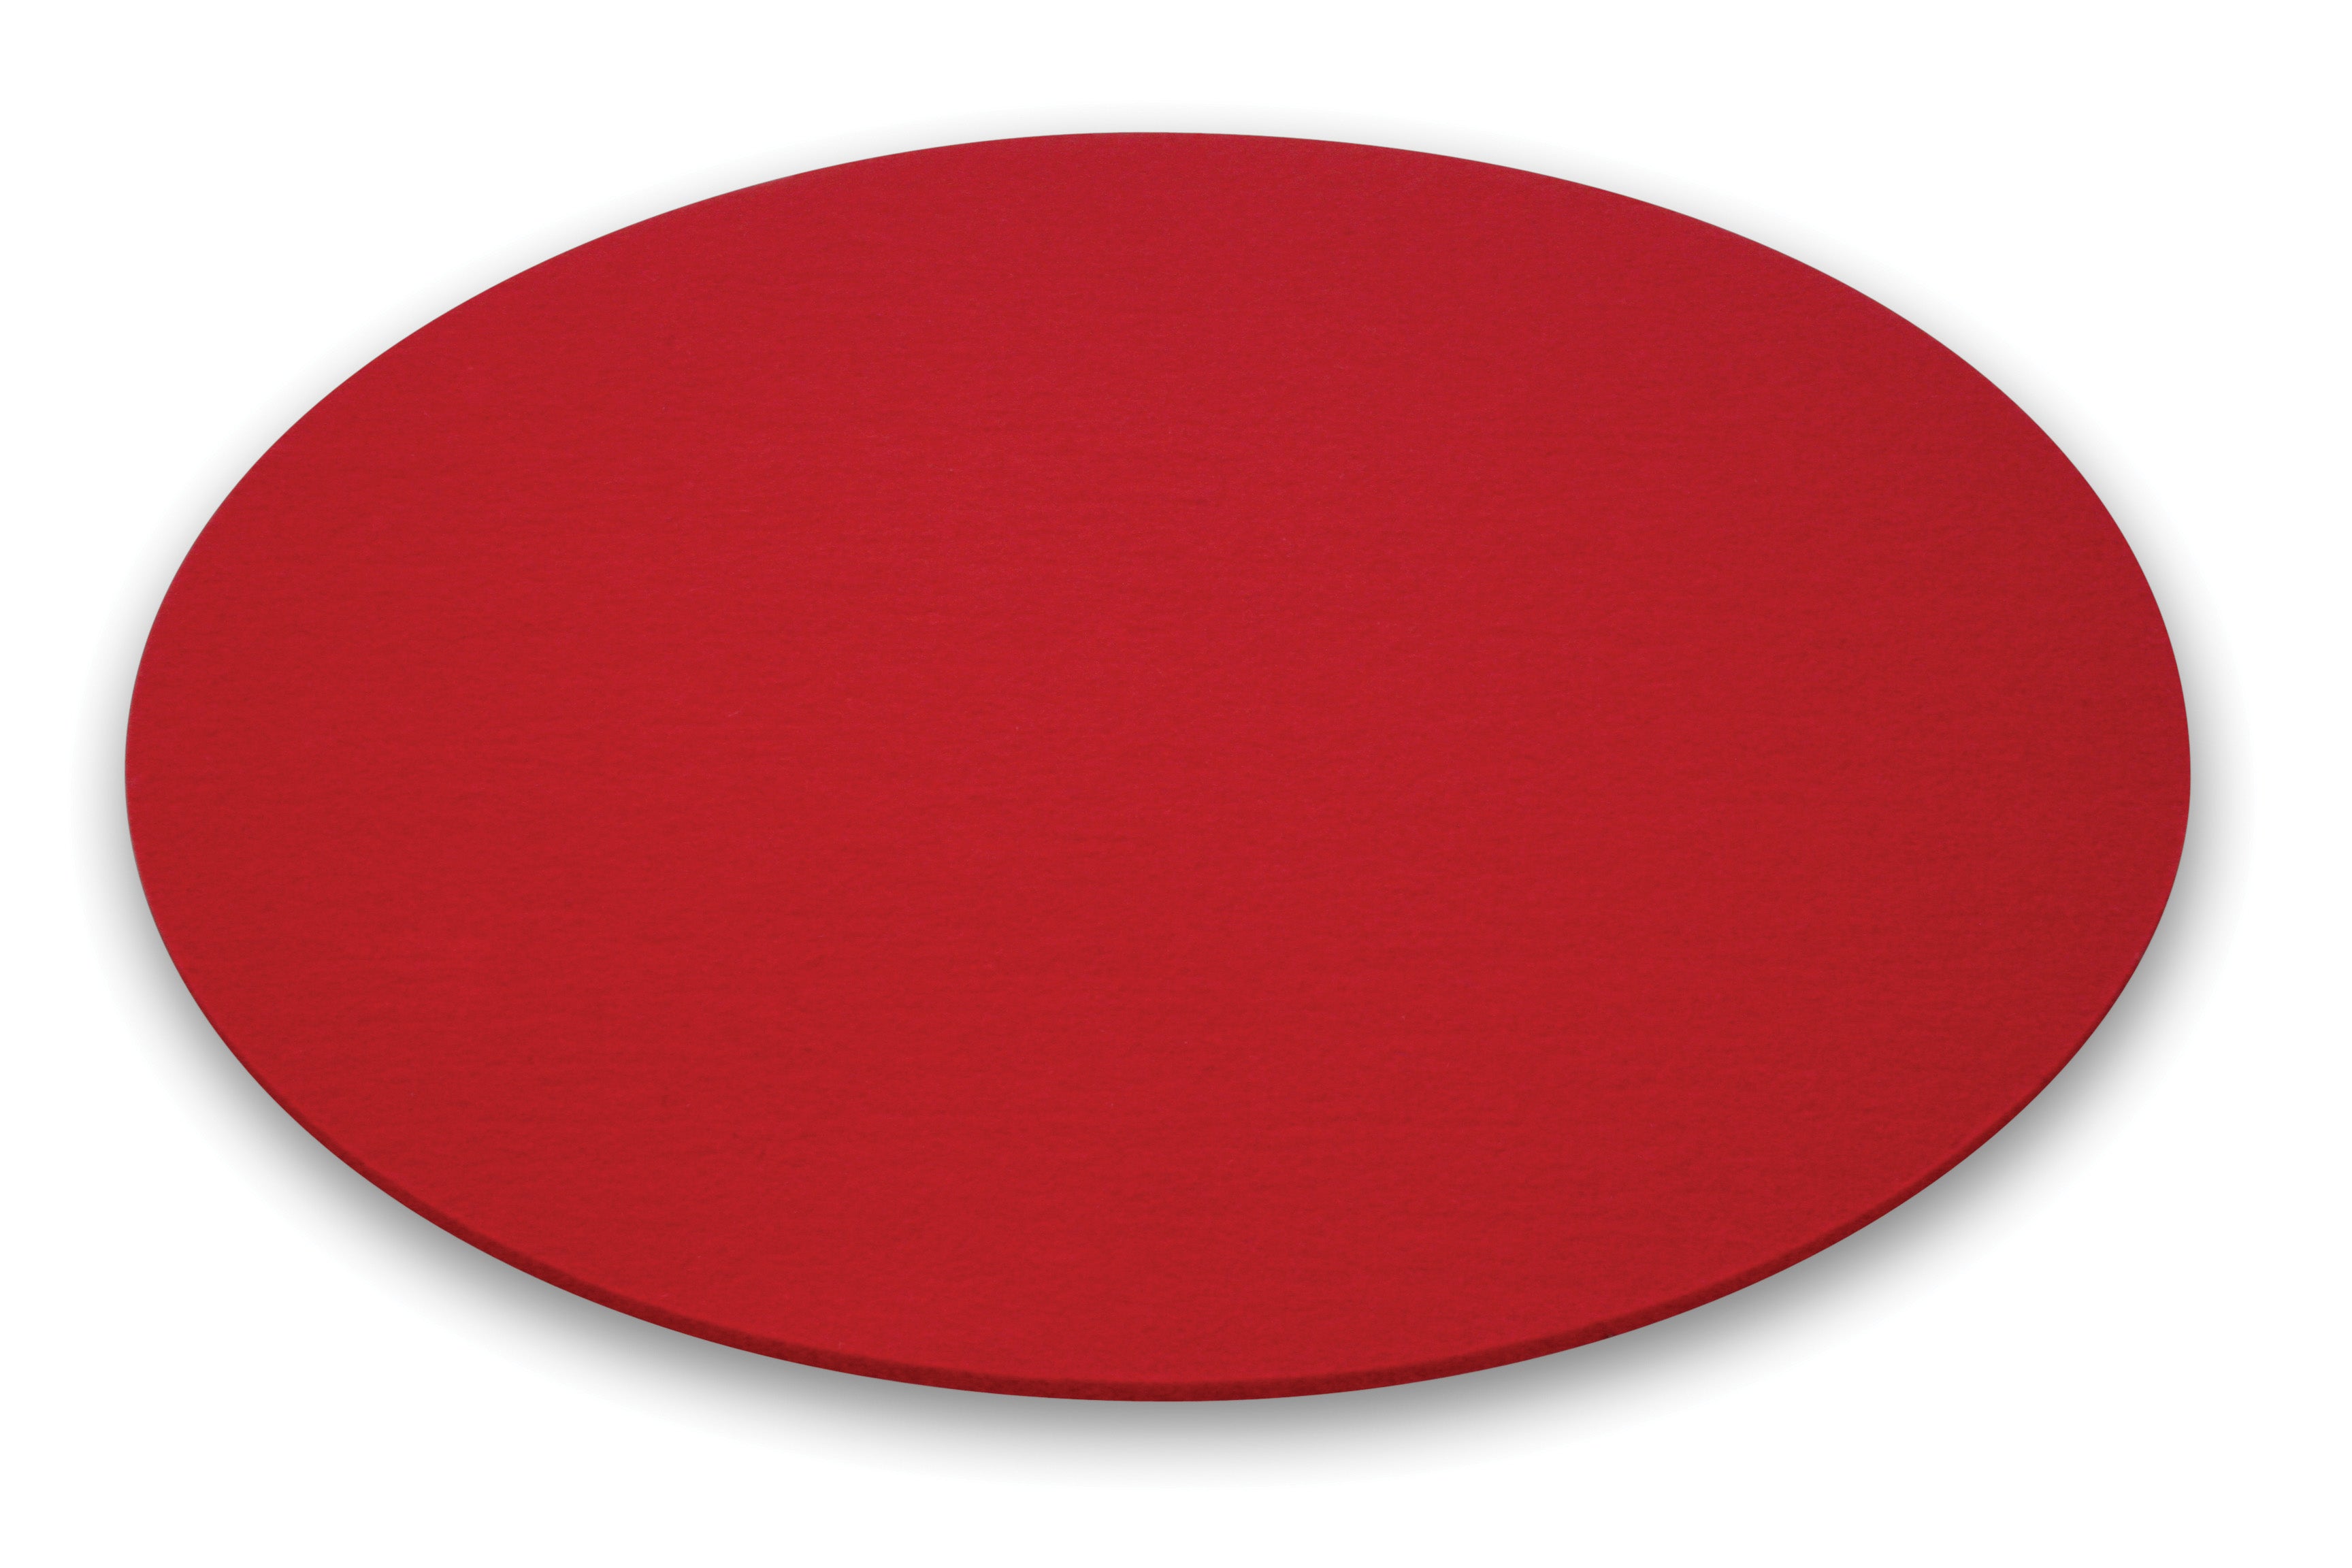 Runde Filzauflage für den Leuchttisch BUBBLE von Moree in rot; Ø 40cm.